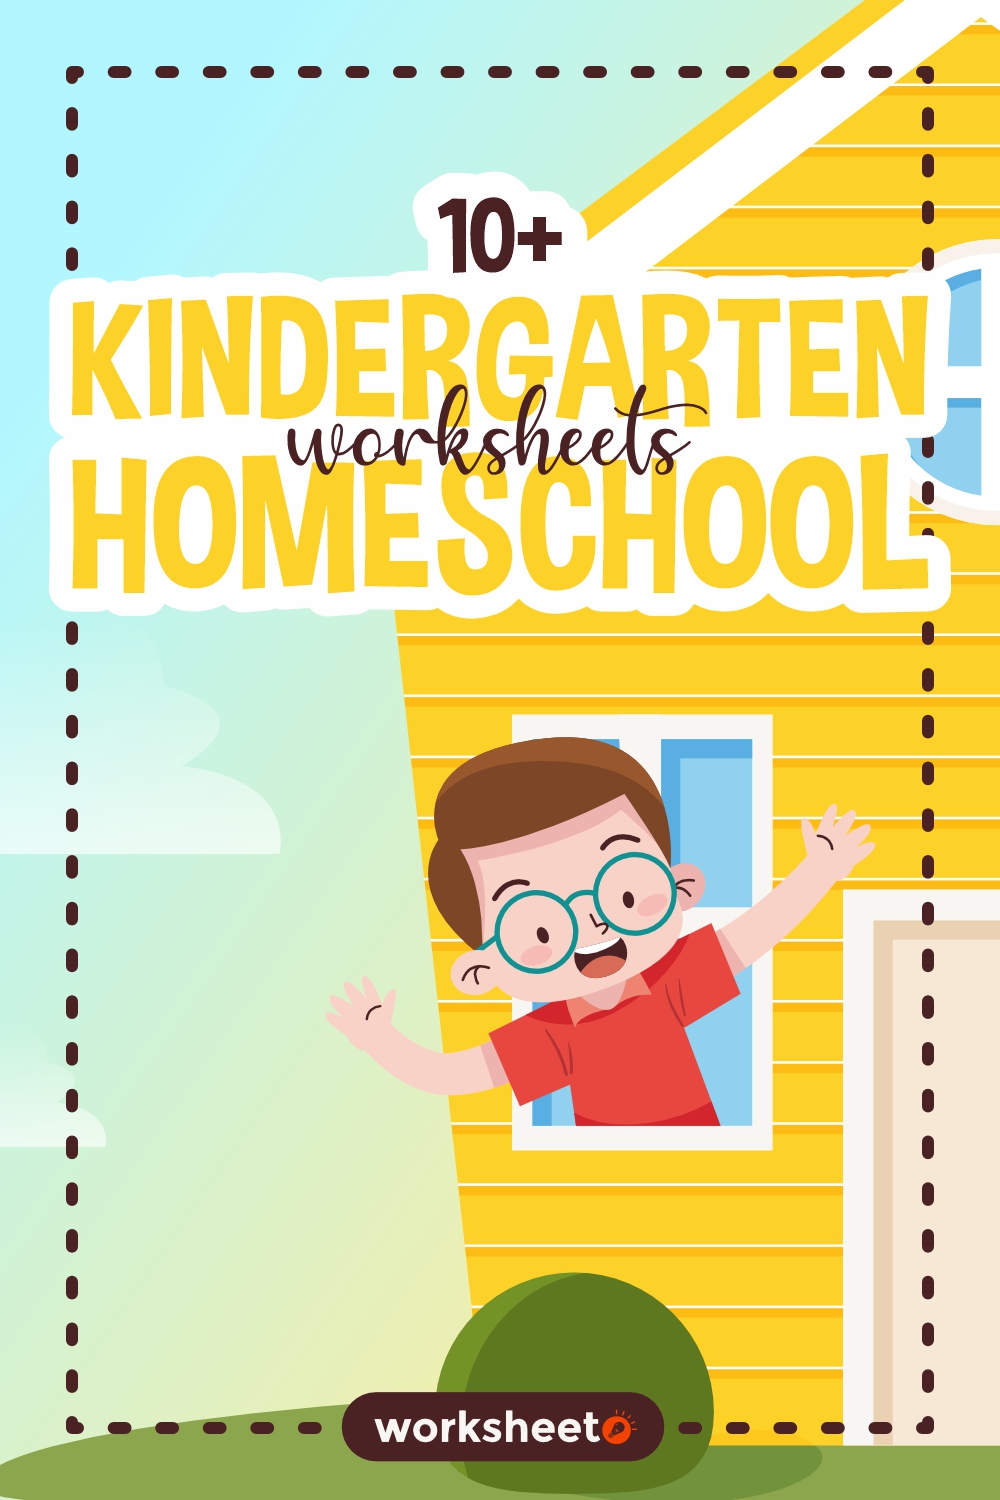 12 Images of Kindergarten Worksheets Homeschool